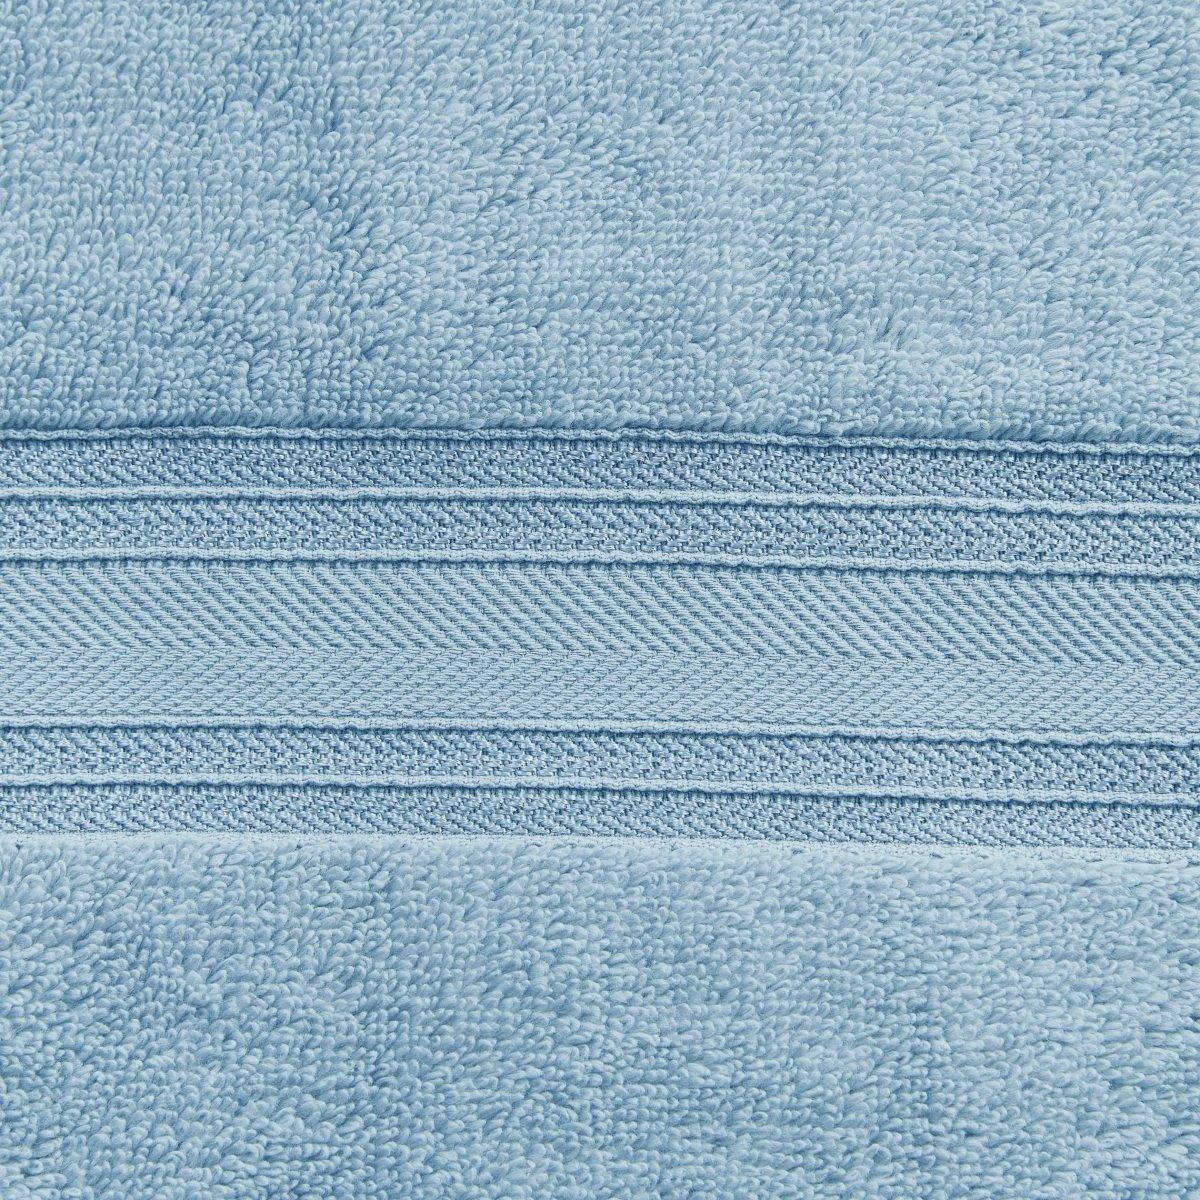 18pc Cotton Bath Towels Set | Spirit Linen - Baby Blue